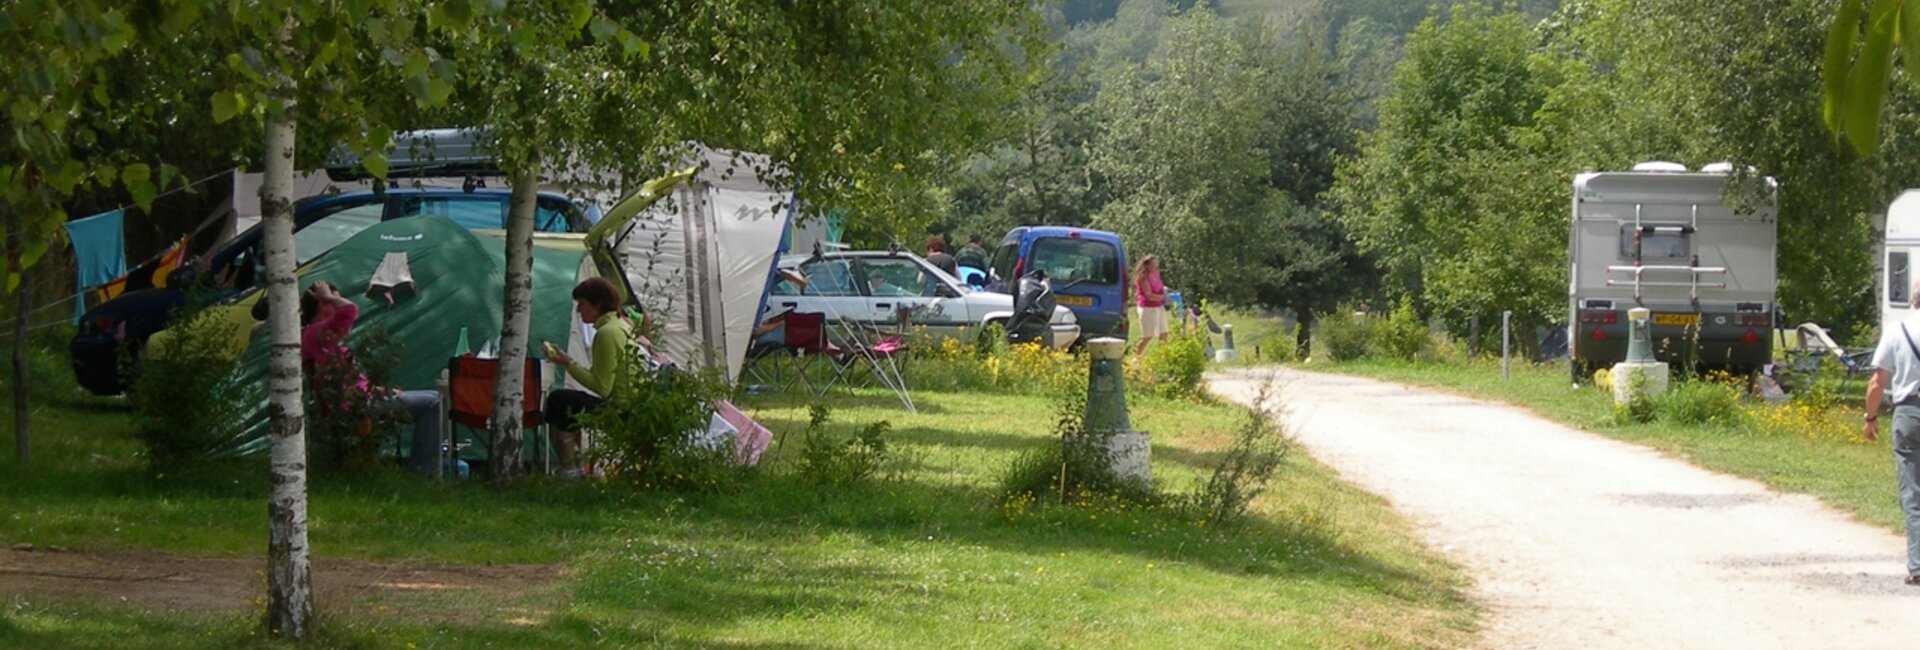 Le camping le Couffour vous offre un cadre naturel apaisant, pour un séjour au calme en toute simplicité.